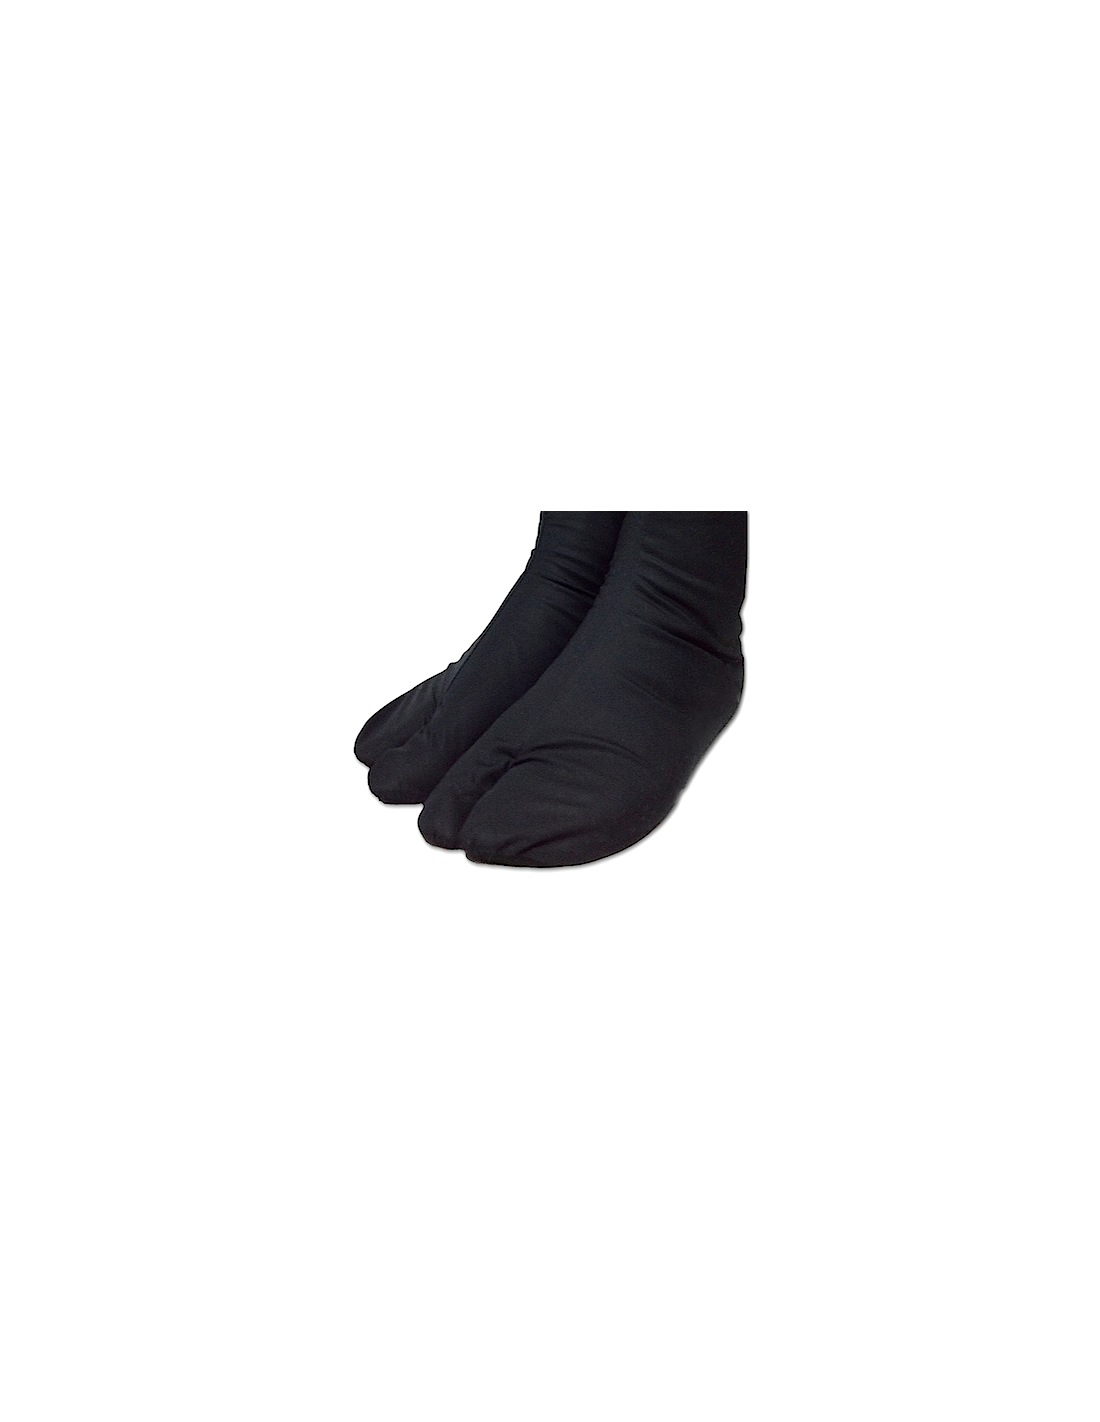 Ninja Tabi Sock Made in Japan